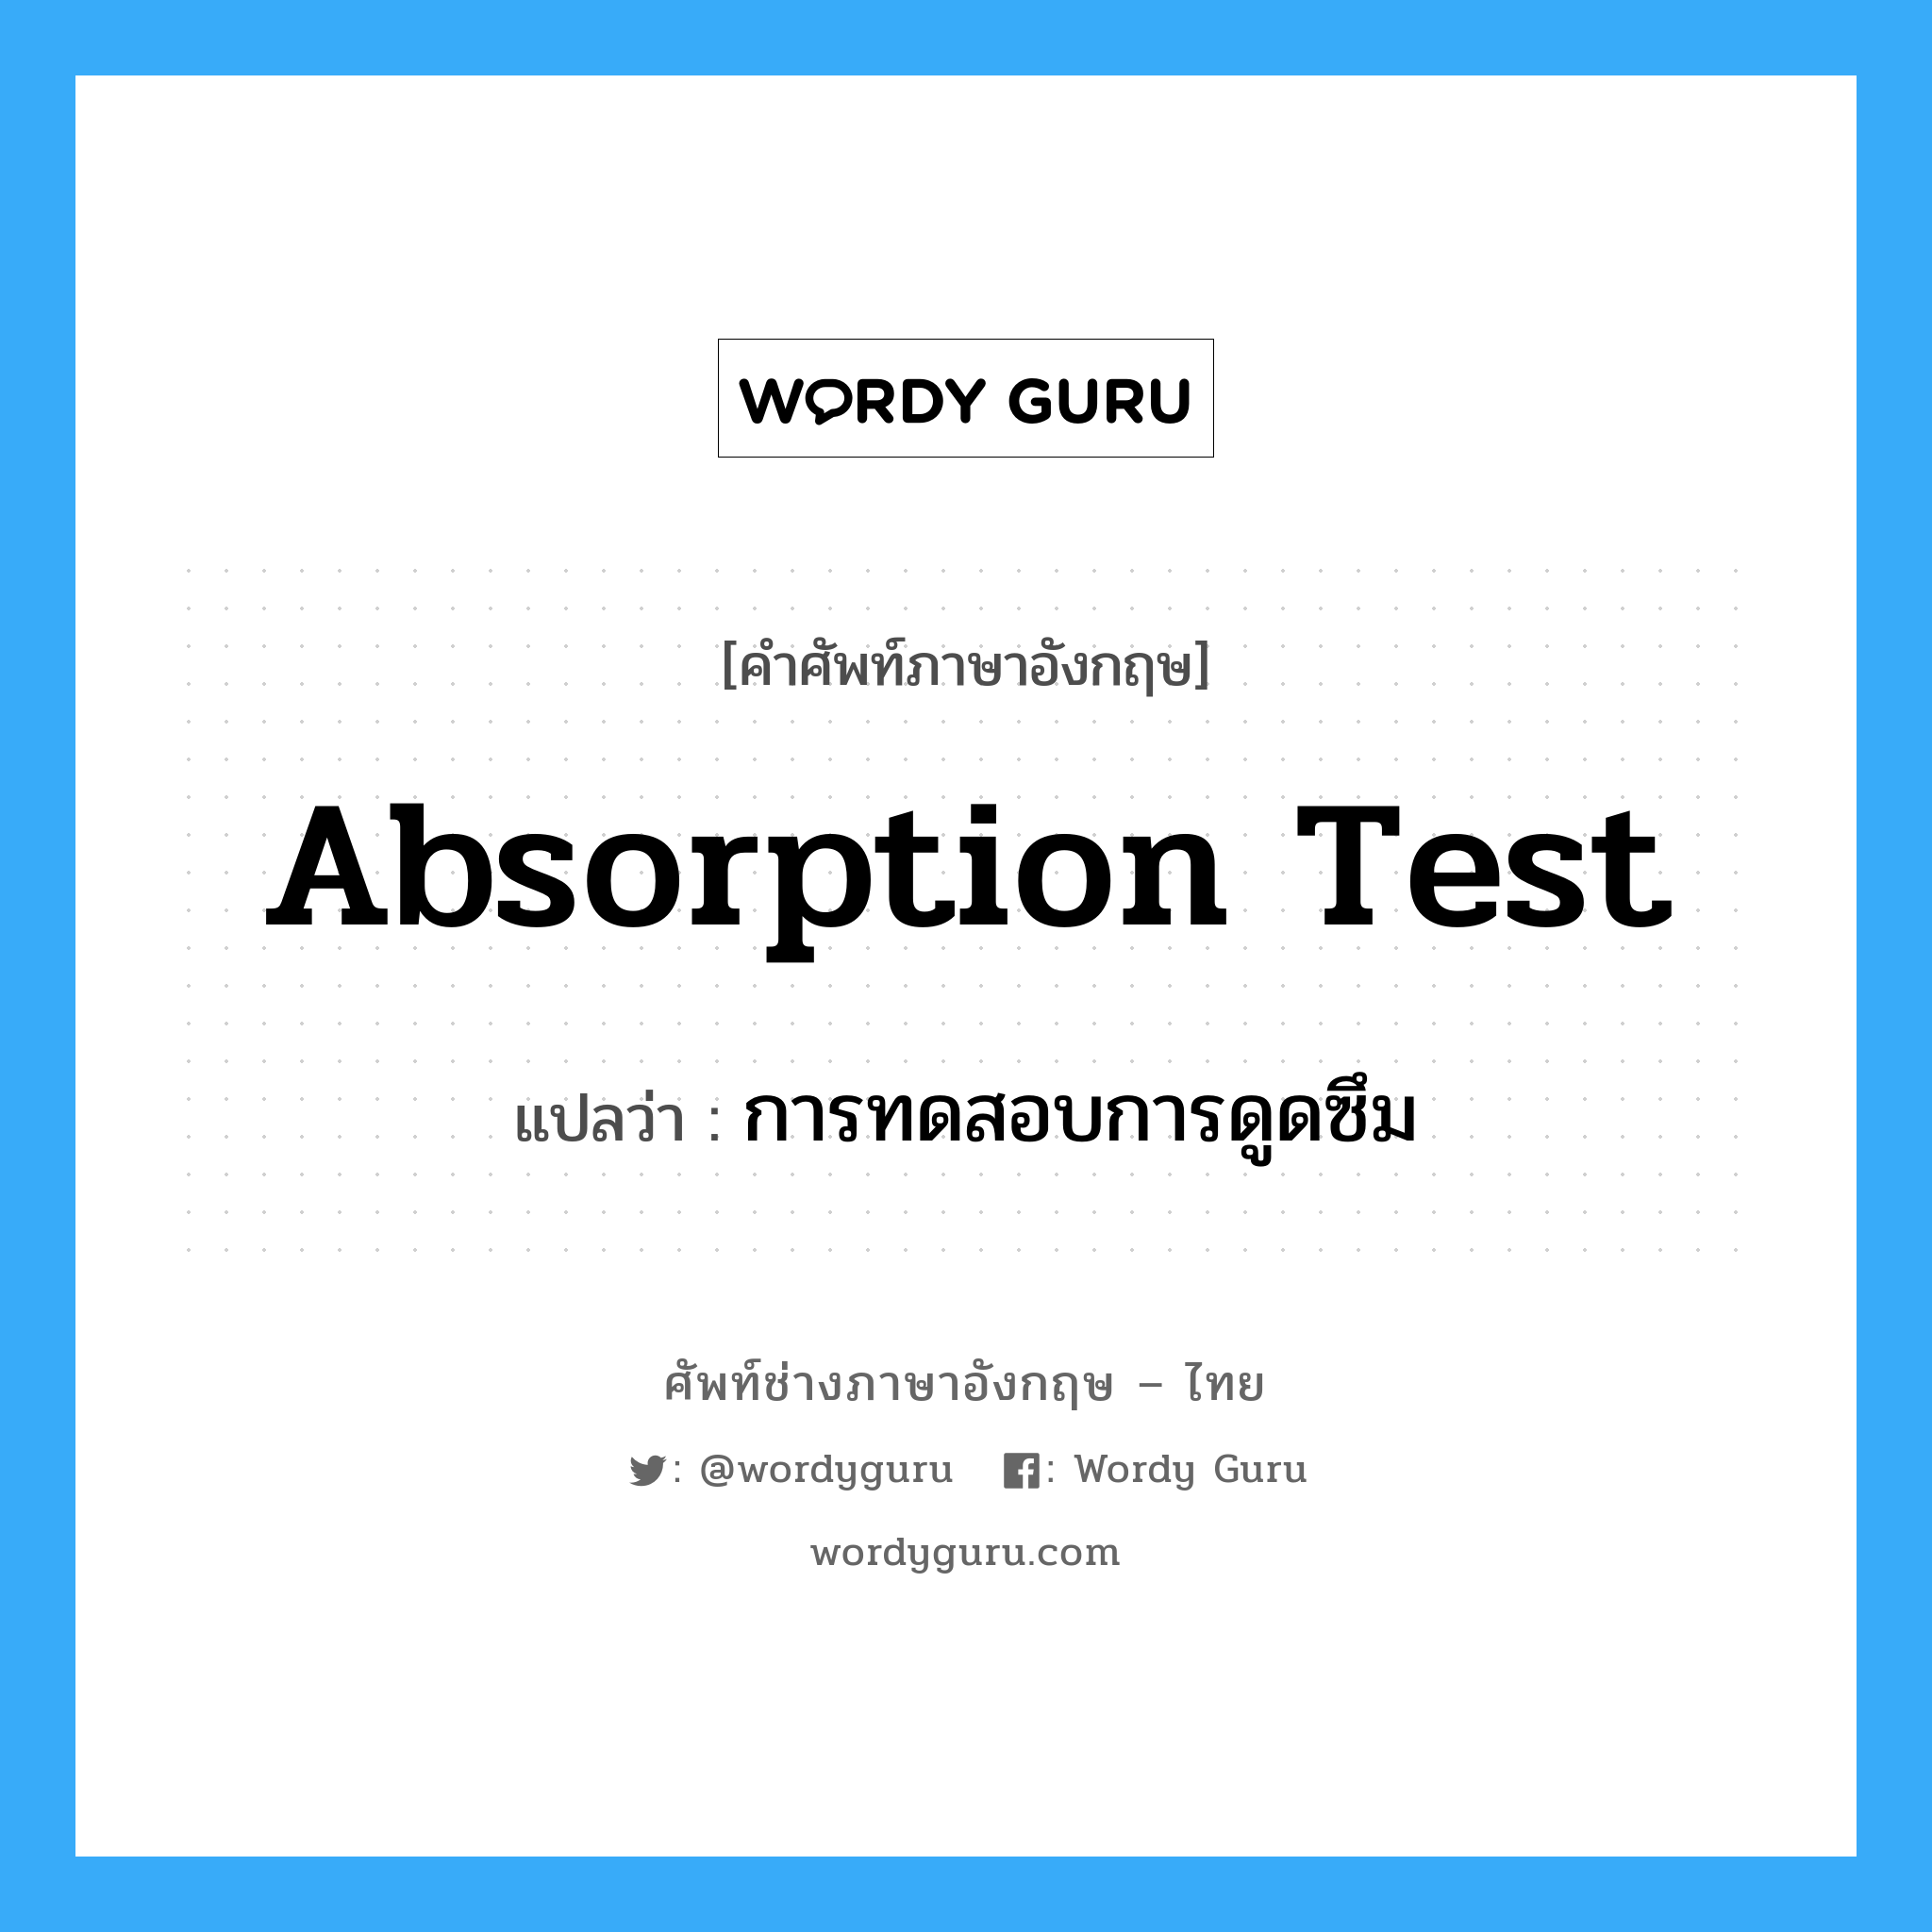 absorption test แปลว่า?, คำศัพท์ช่างภาษาอังกฤษ - ไทย absorption test คำศัพท์ภาษาอังกฤษ absorption test แปลว่า การทดสอบการดูดซึม